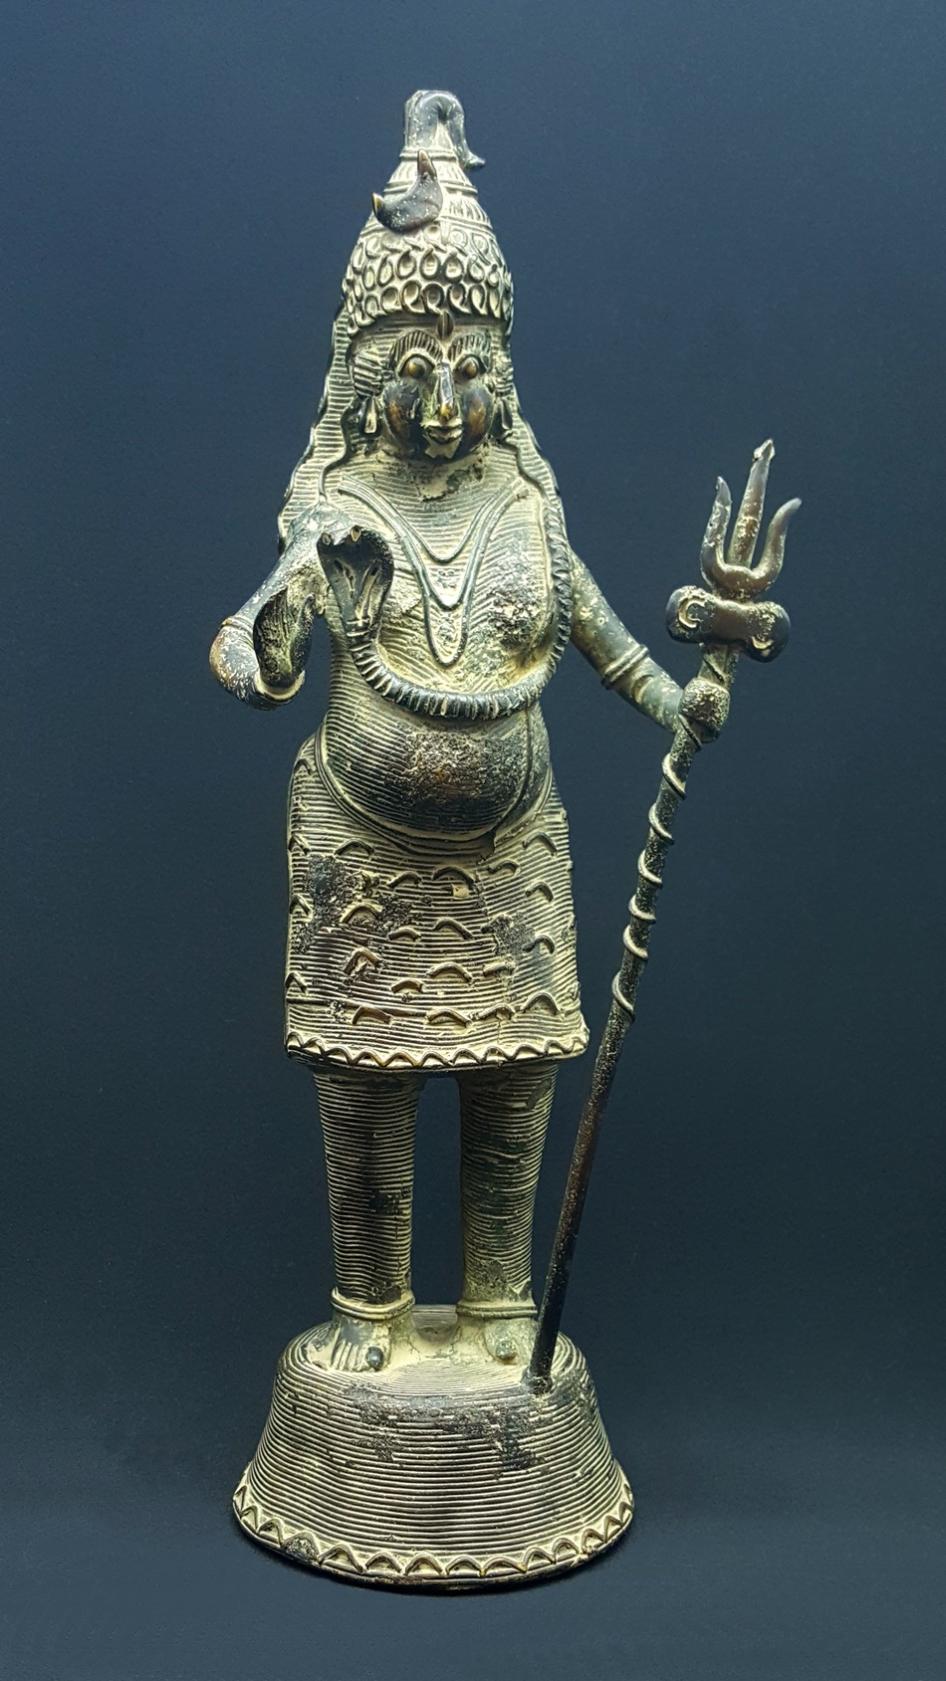 Shiva Chandra Sekhara